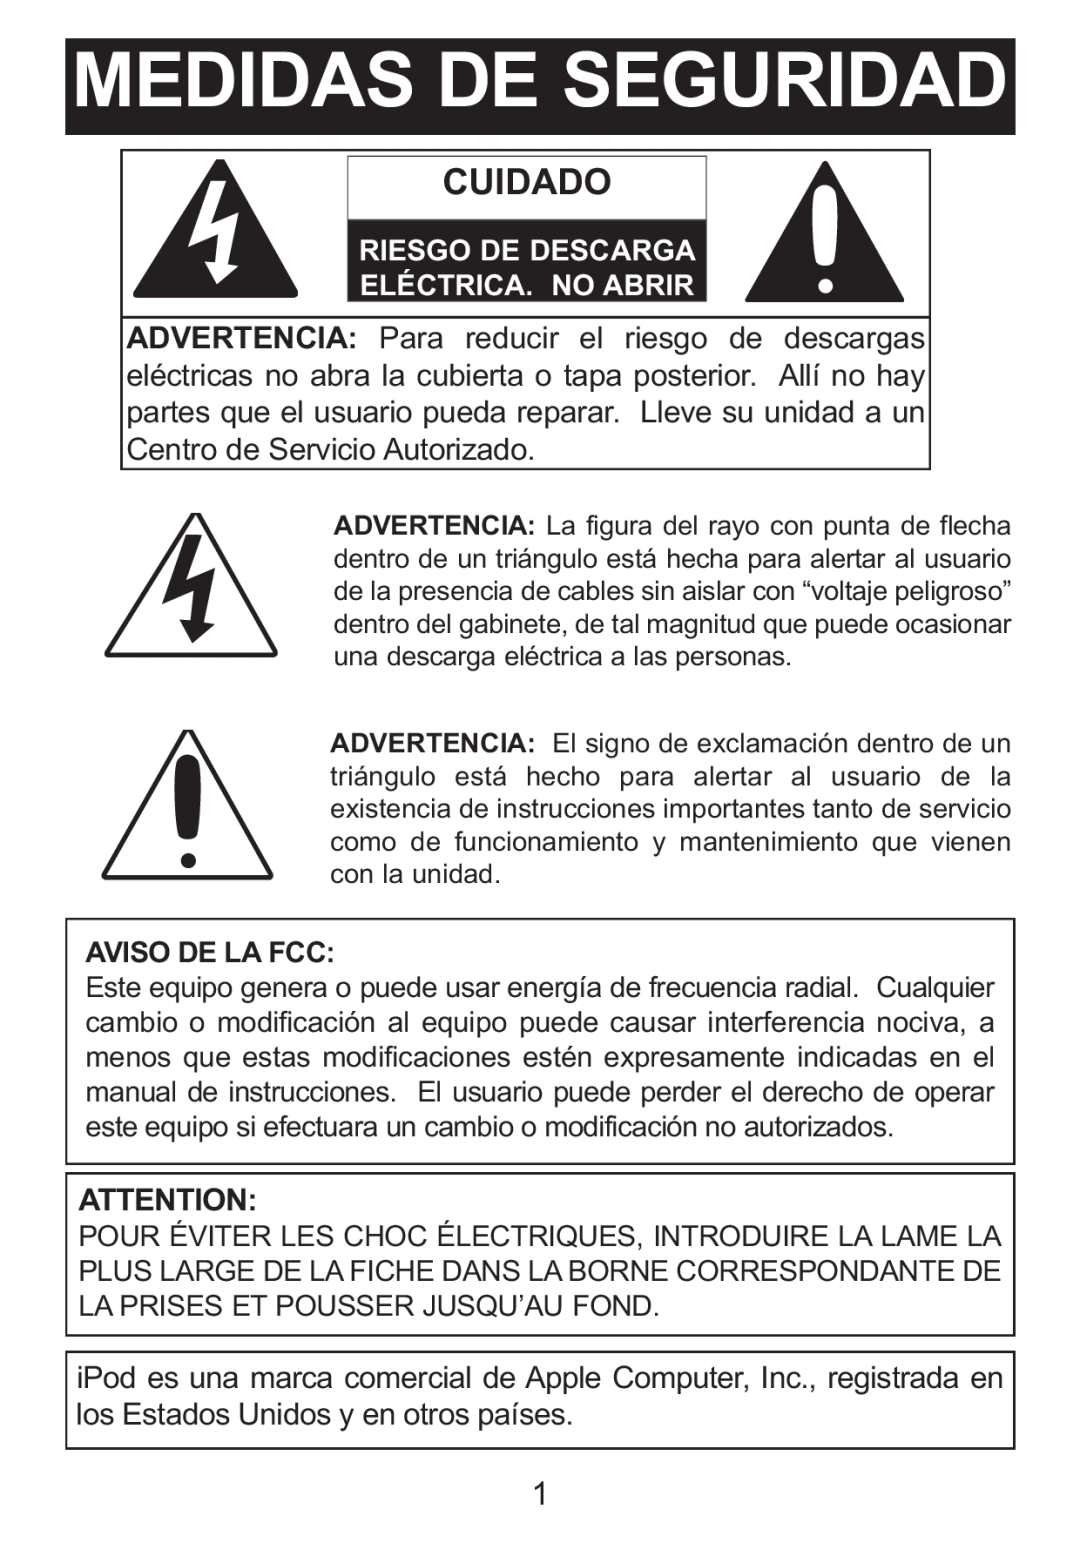 Memorex Mi4014 manual Medidas De Seguridad, Cuidado, Riesgo De Descarga Eléctrica. No Abrir 